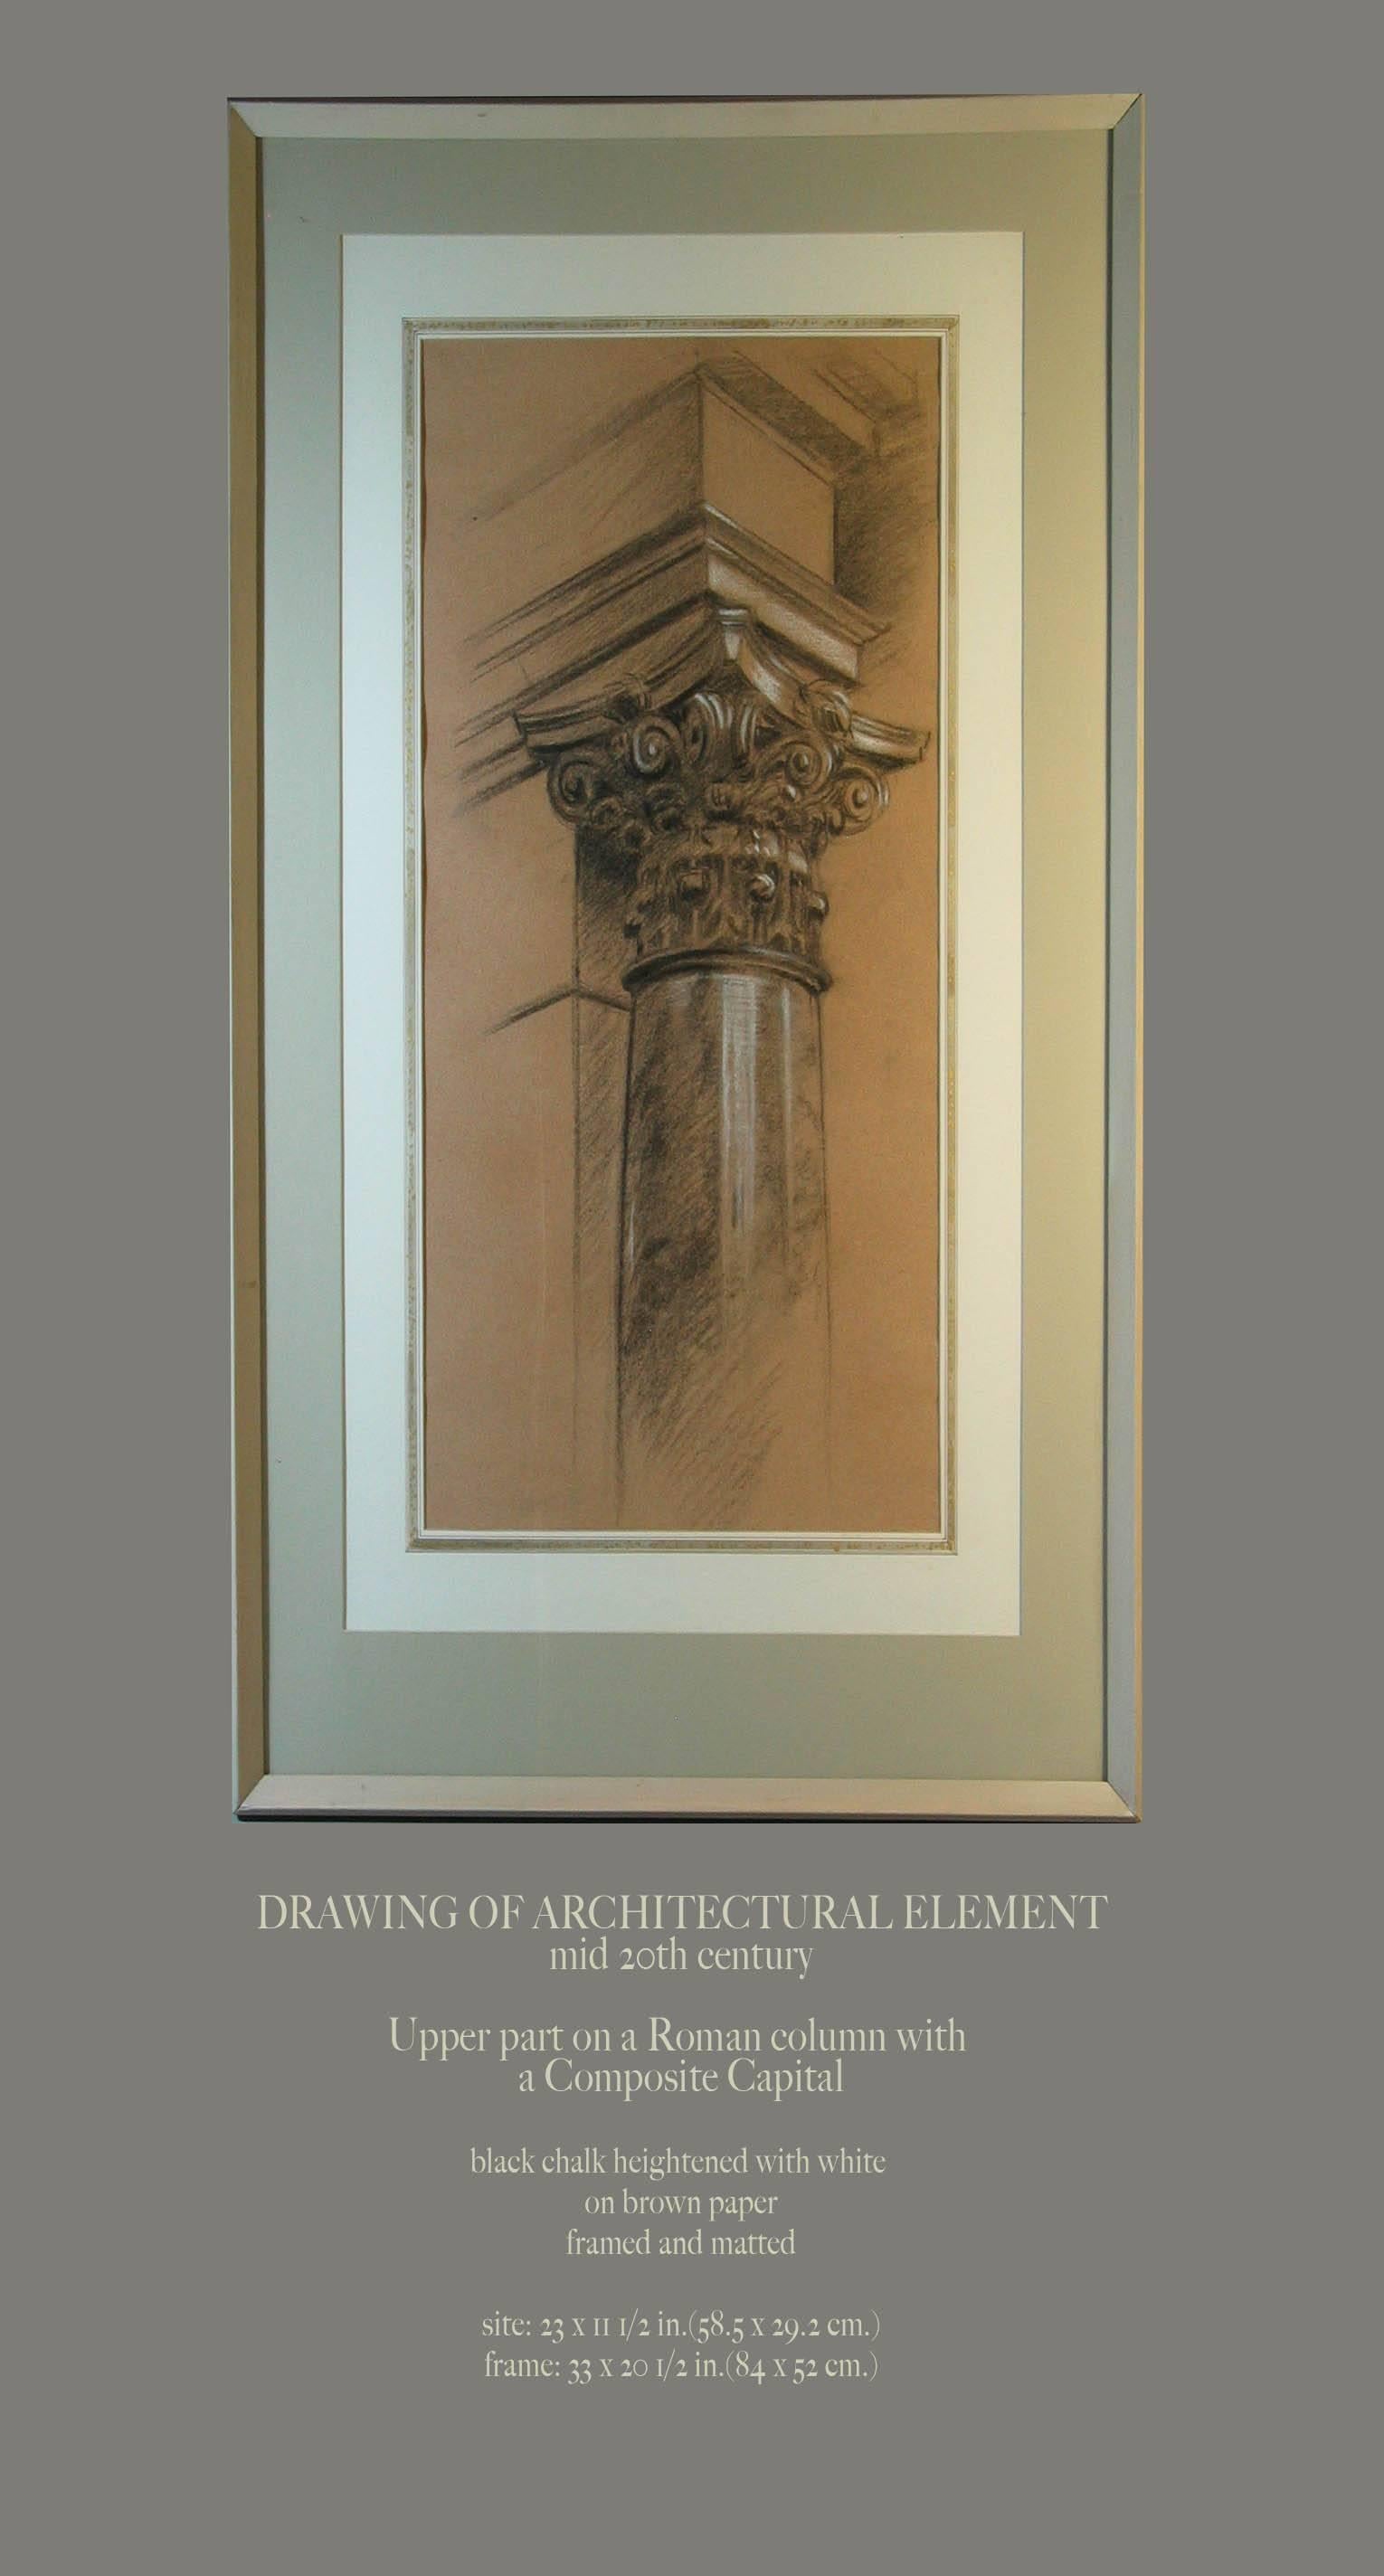 Zeichnung eines architektonischen Elements, Mitte des 20. Jahrhunderts, oberer Teil einer römischen Säule mit einem Kompositkapitell. Schwarze Kreide mit Weißhöhung auf braunem Papier, gerahmt und paspeliert, handgezeichnet.
Die Größe beträgt